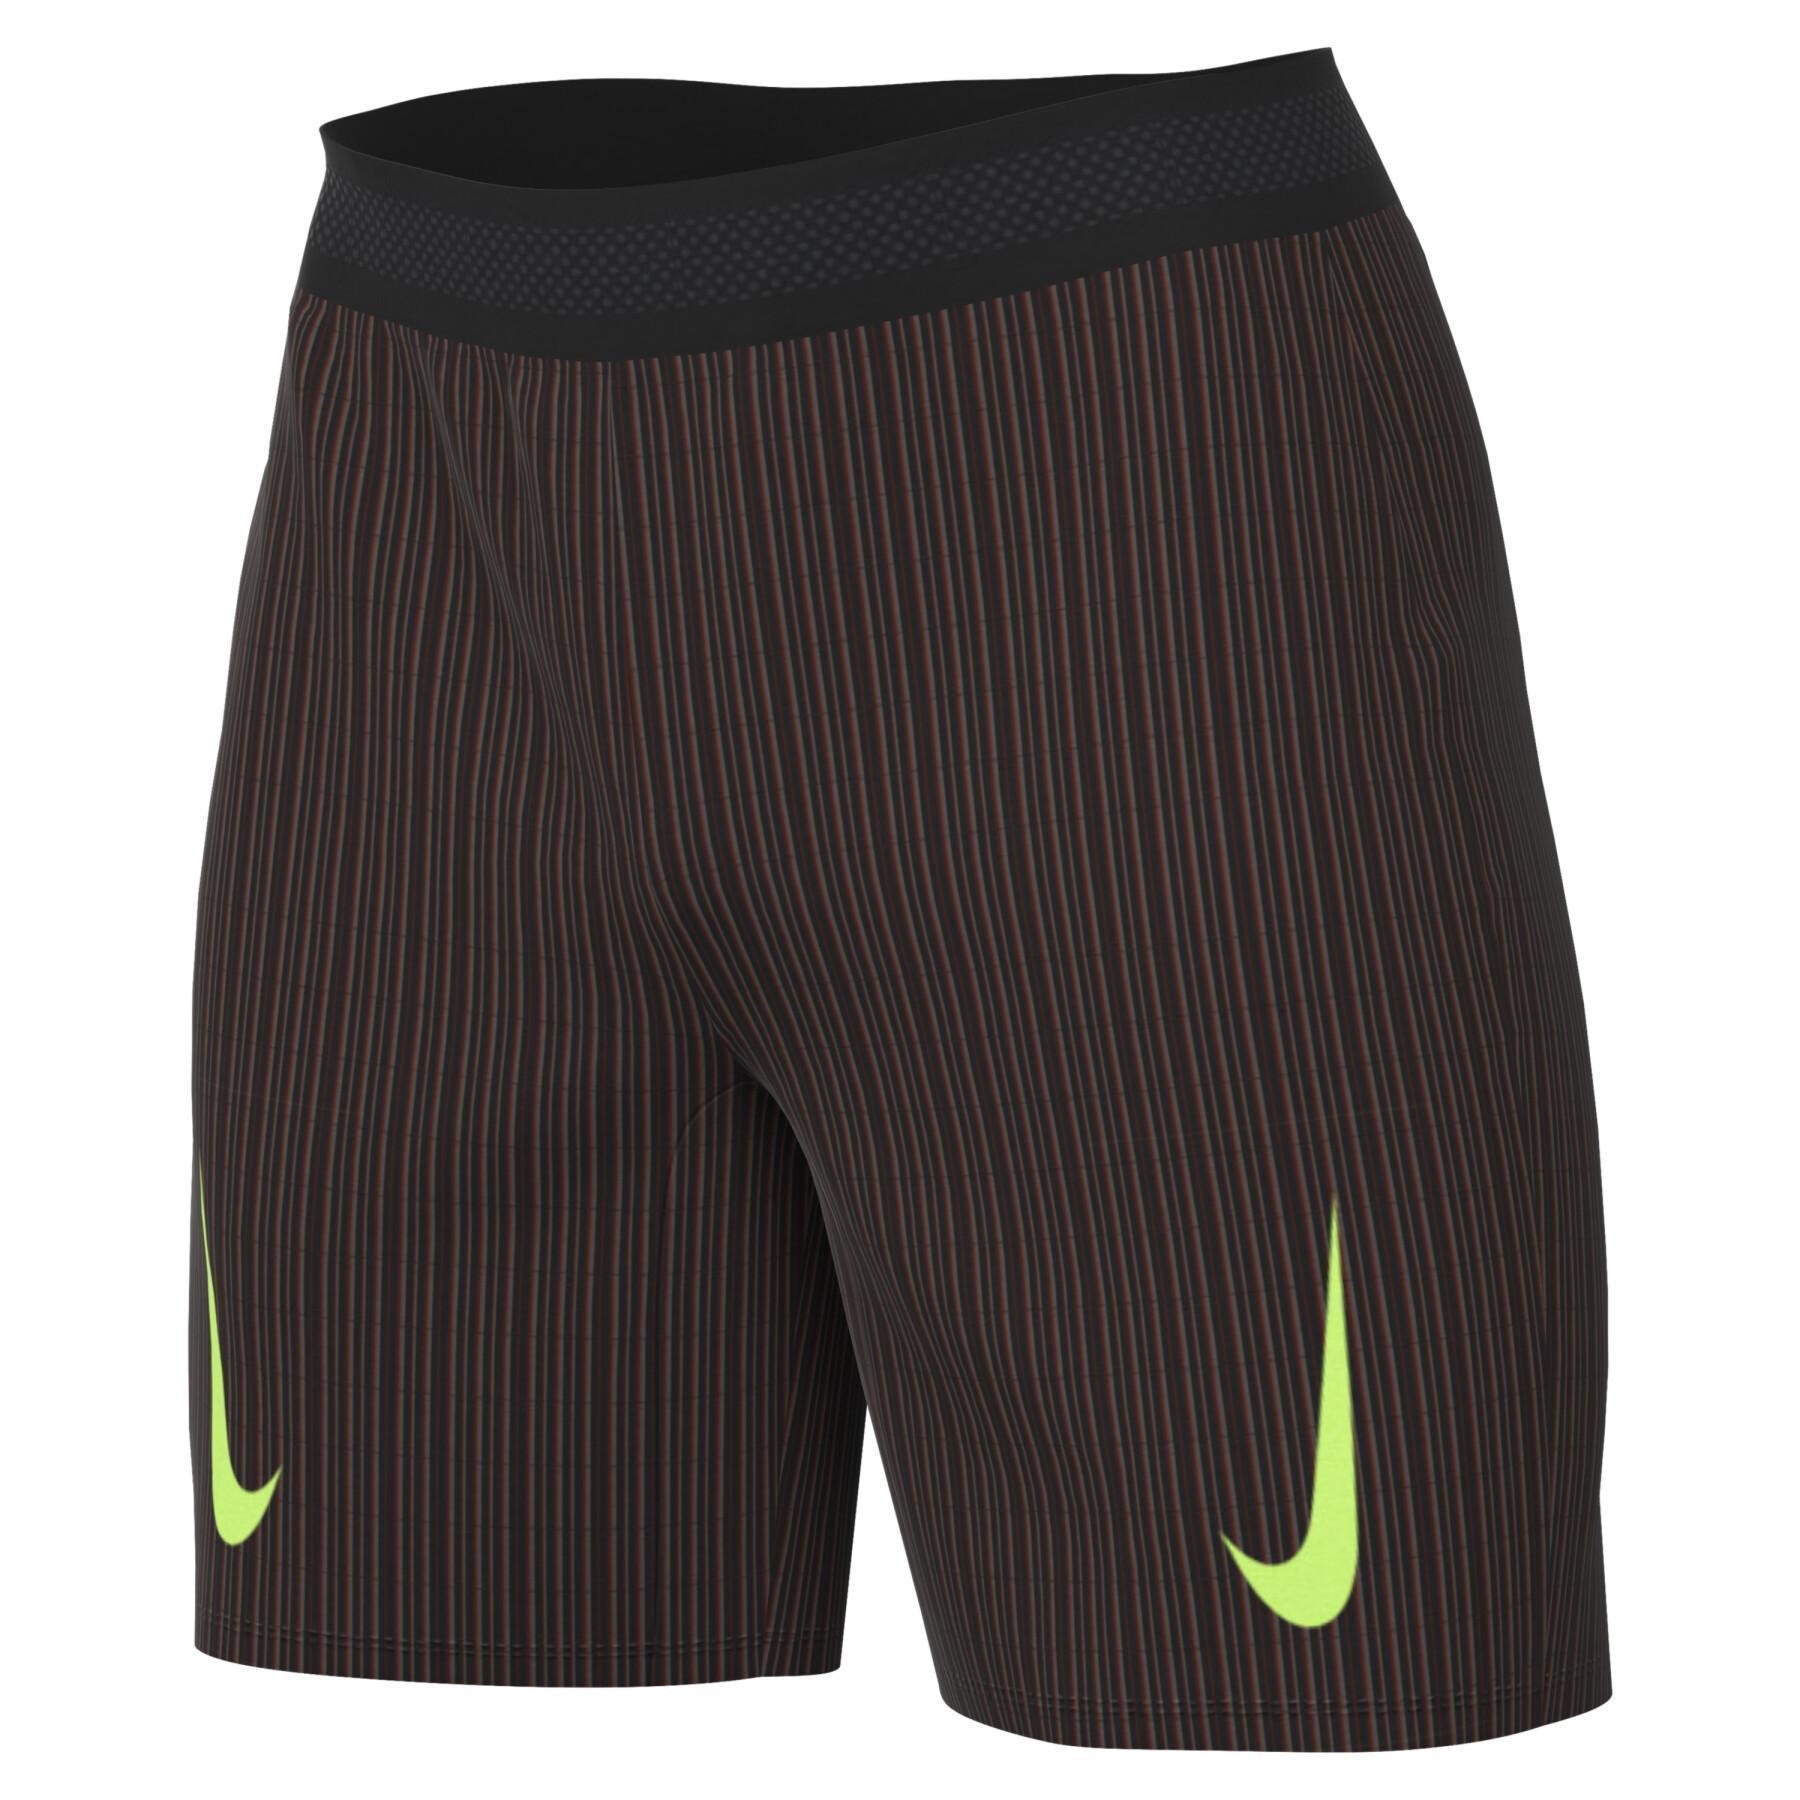 Pantaloncini Nike Dri-Fit ADV Aroswft